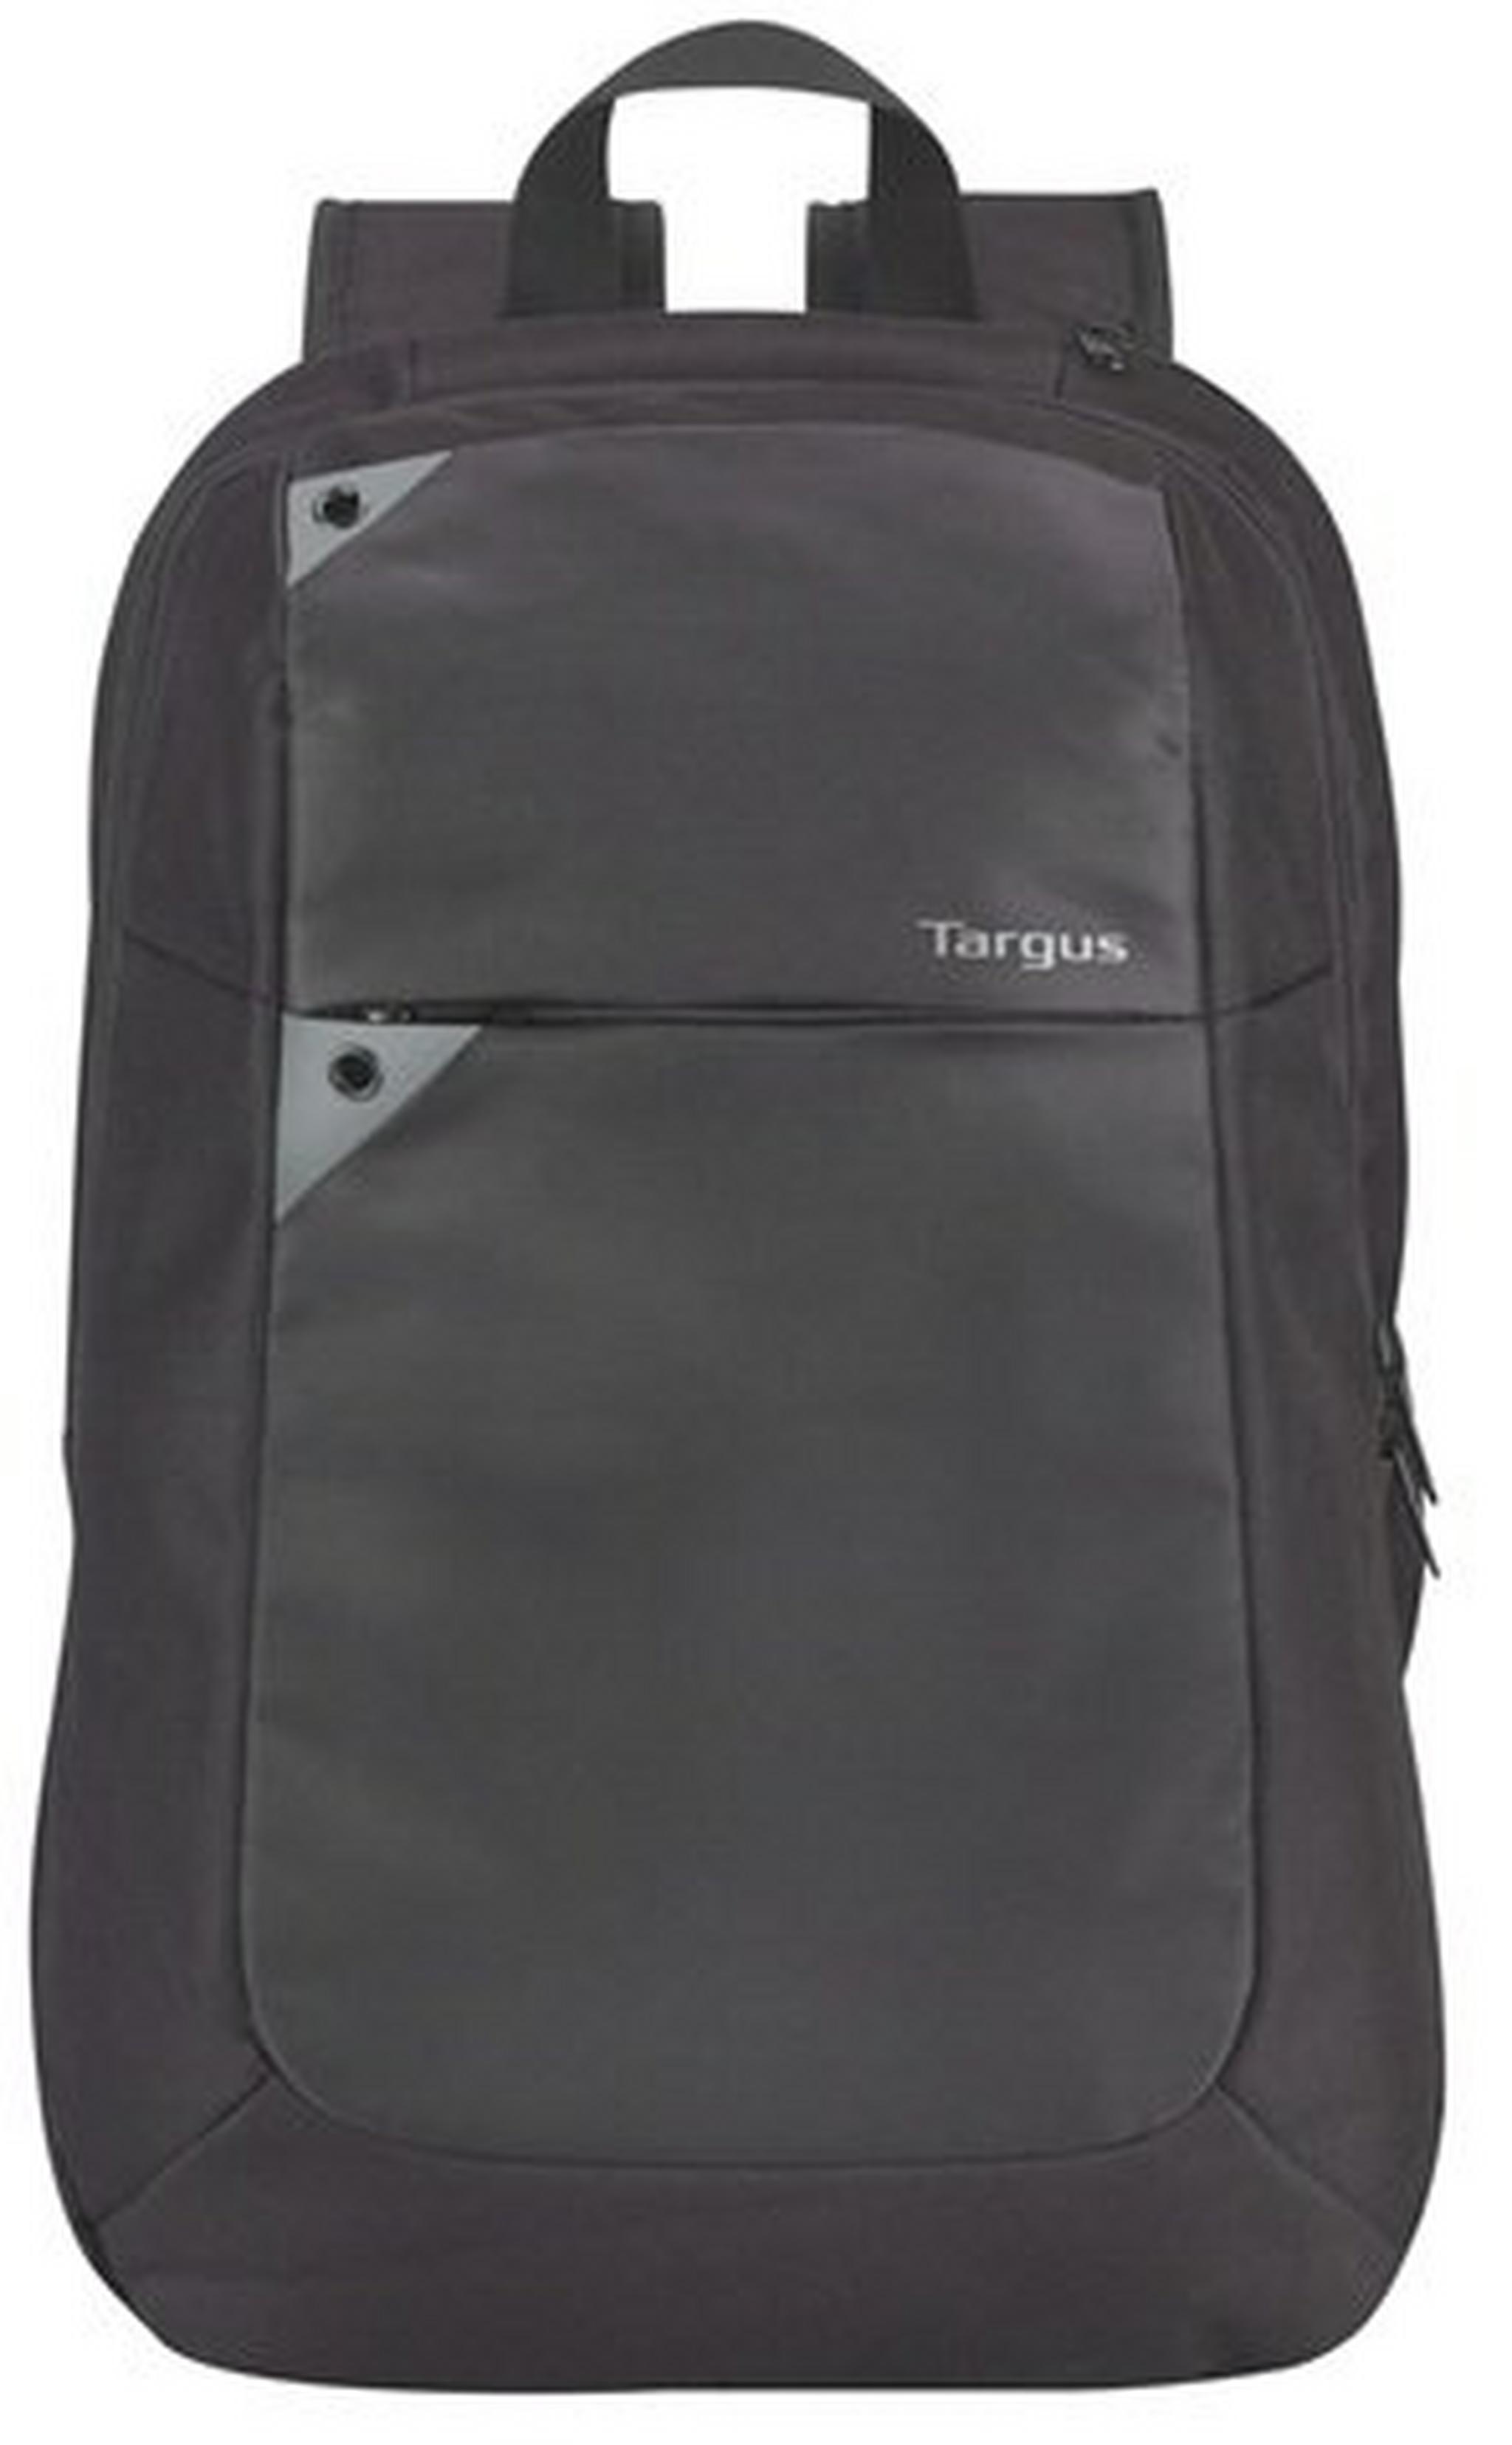 حقيبة من تارجس للابتوب ١٥- بوصة - أسود